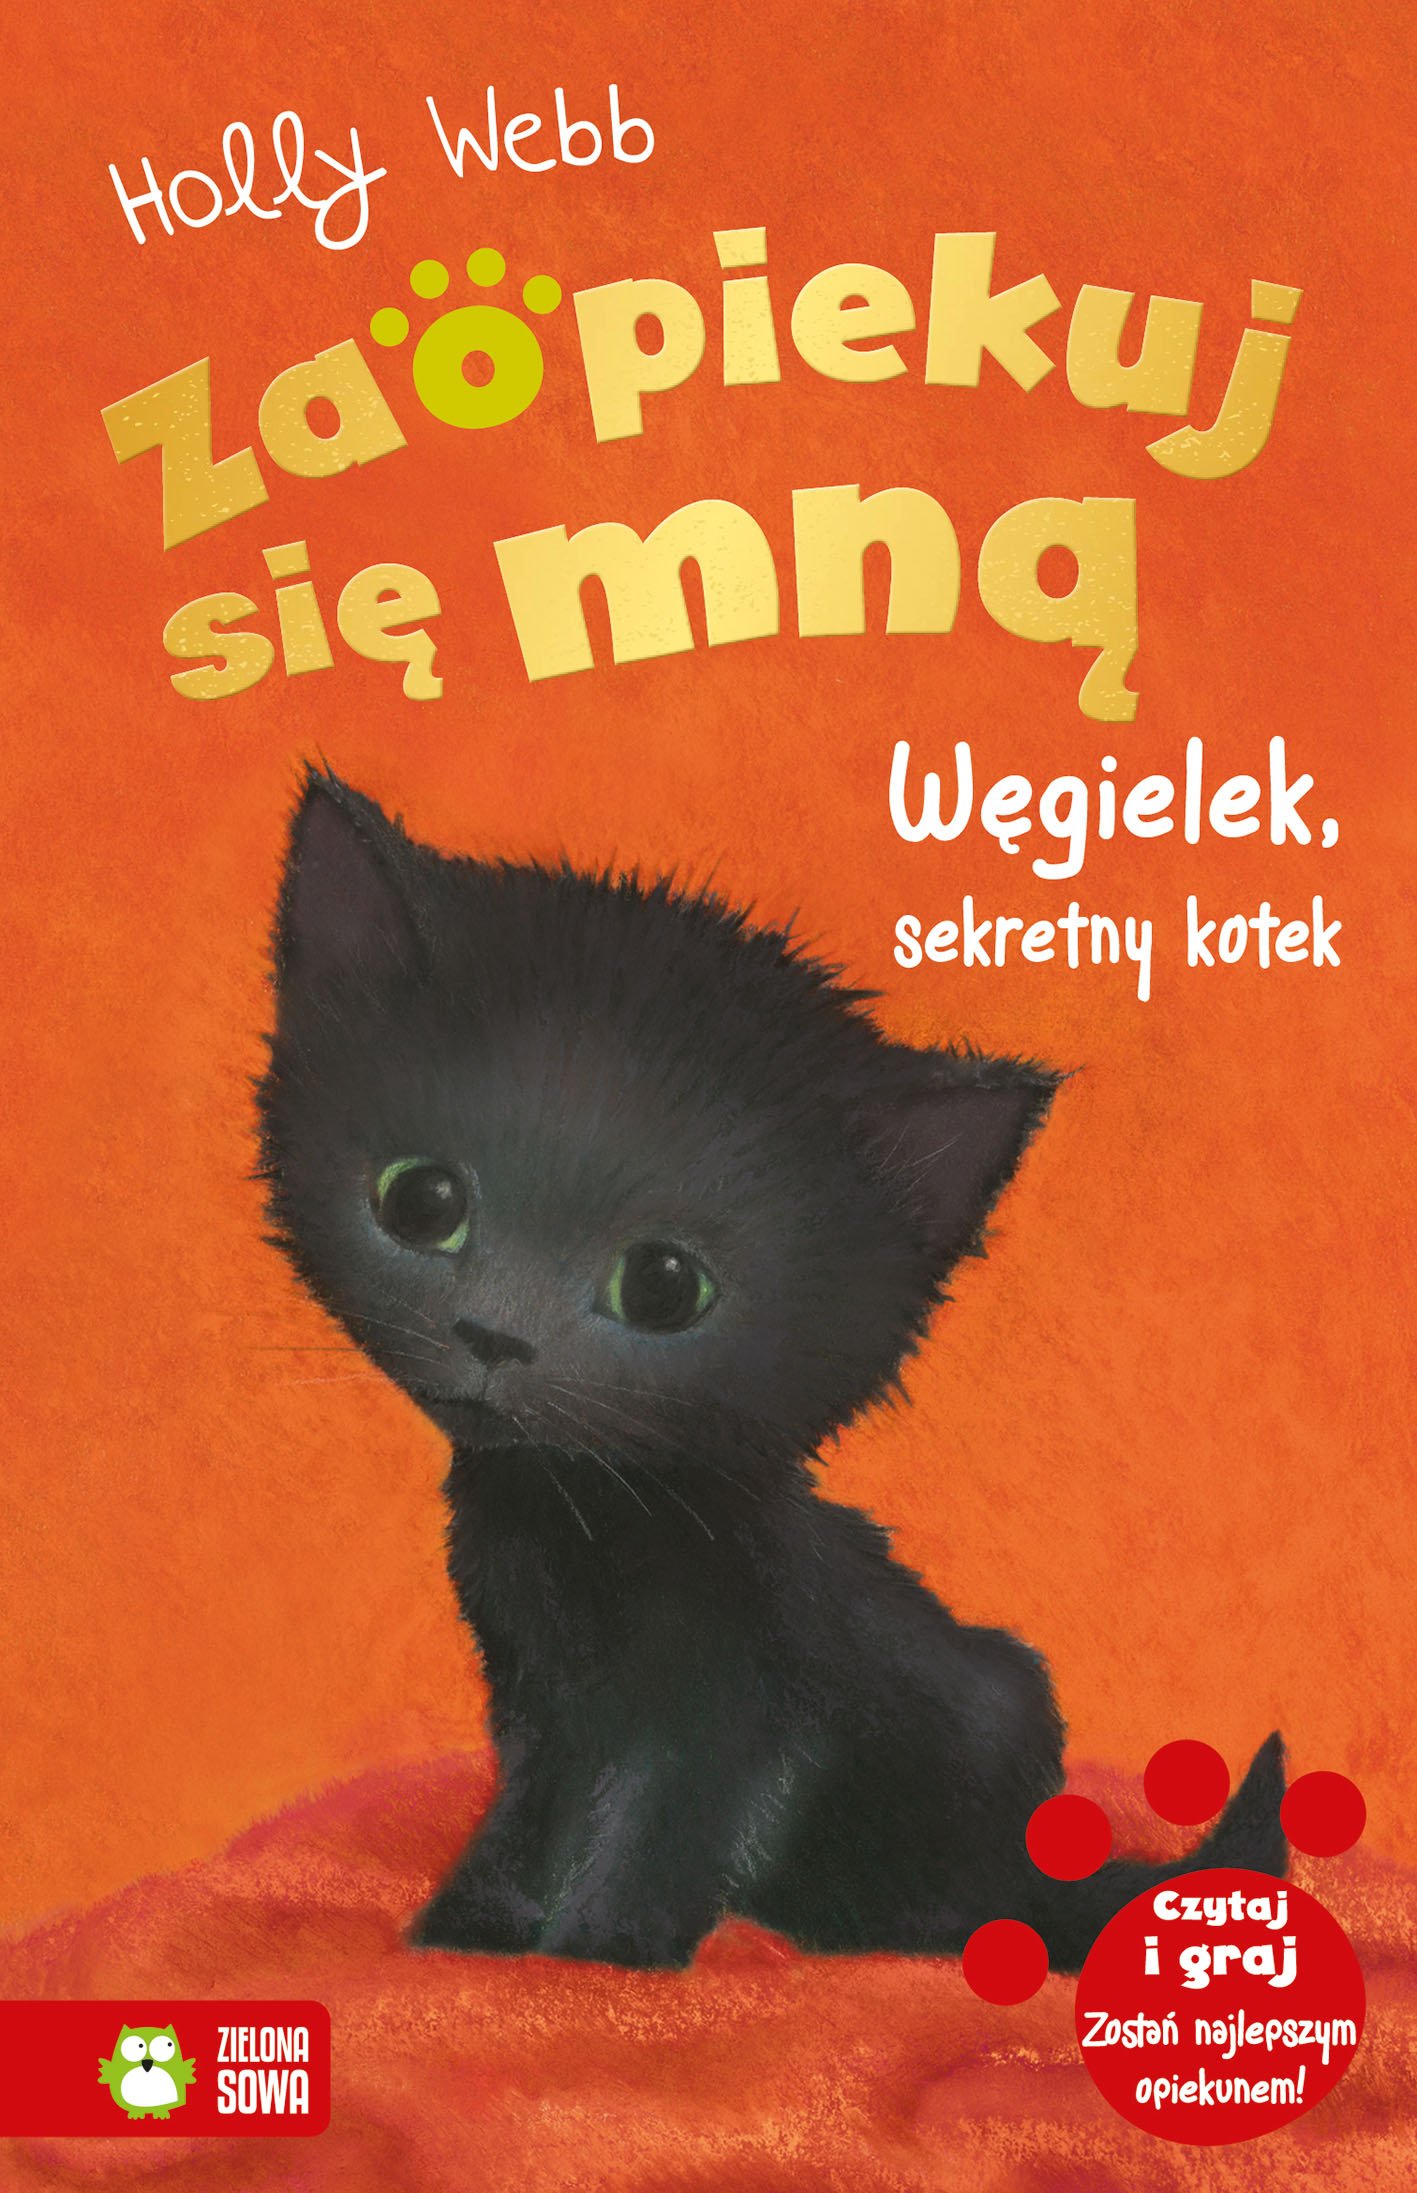 Zaopiekuj się mną. Węgielek, sekretny kotek - książka dla dzieci